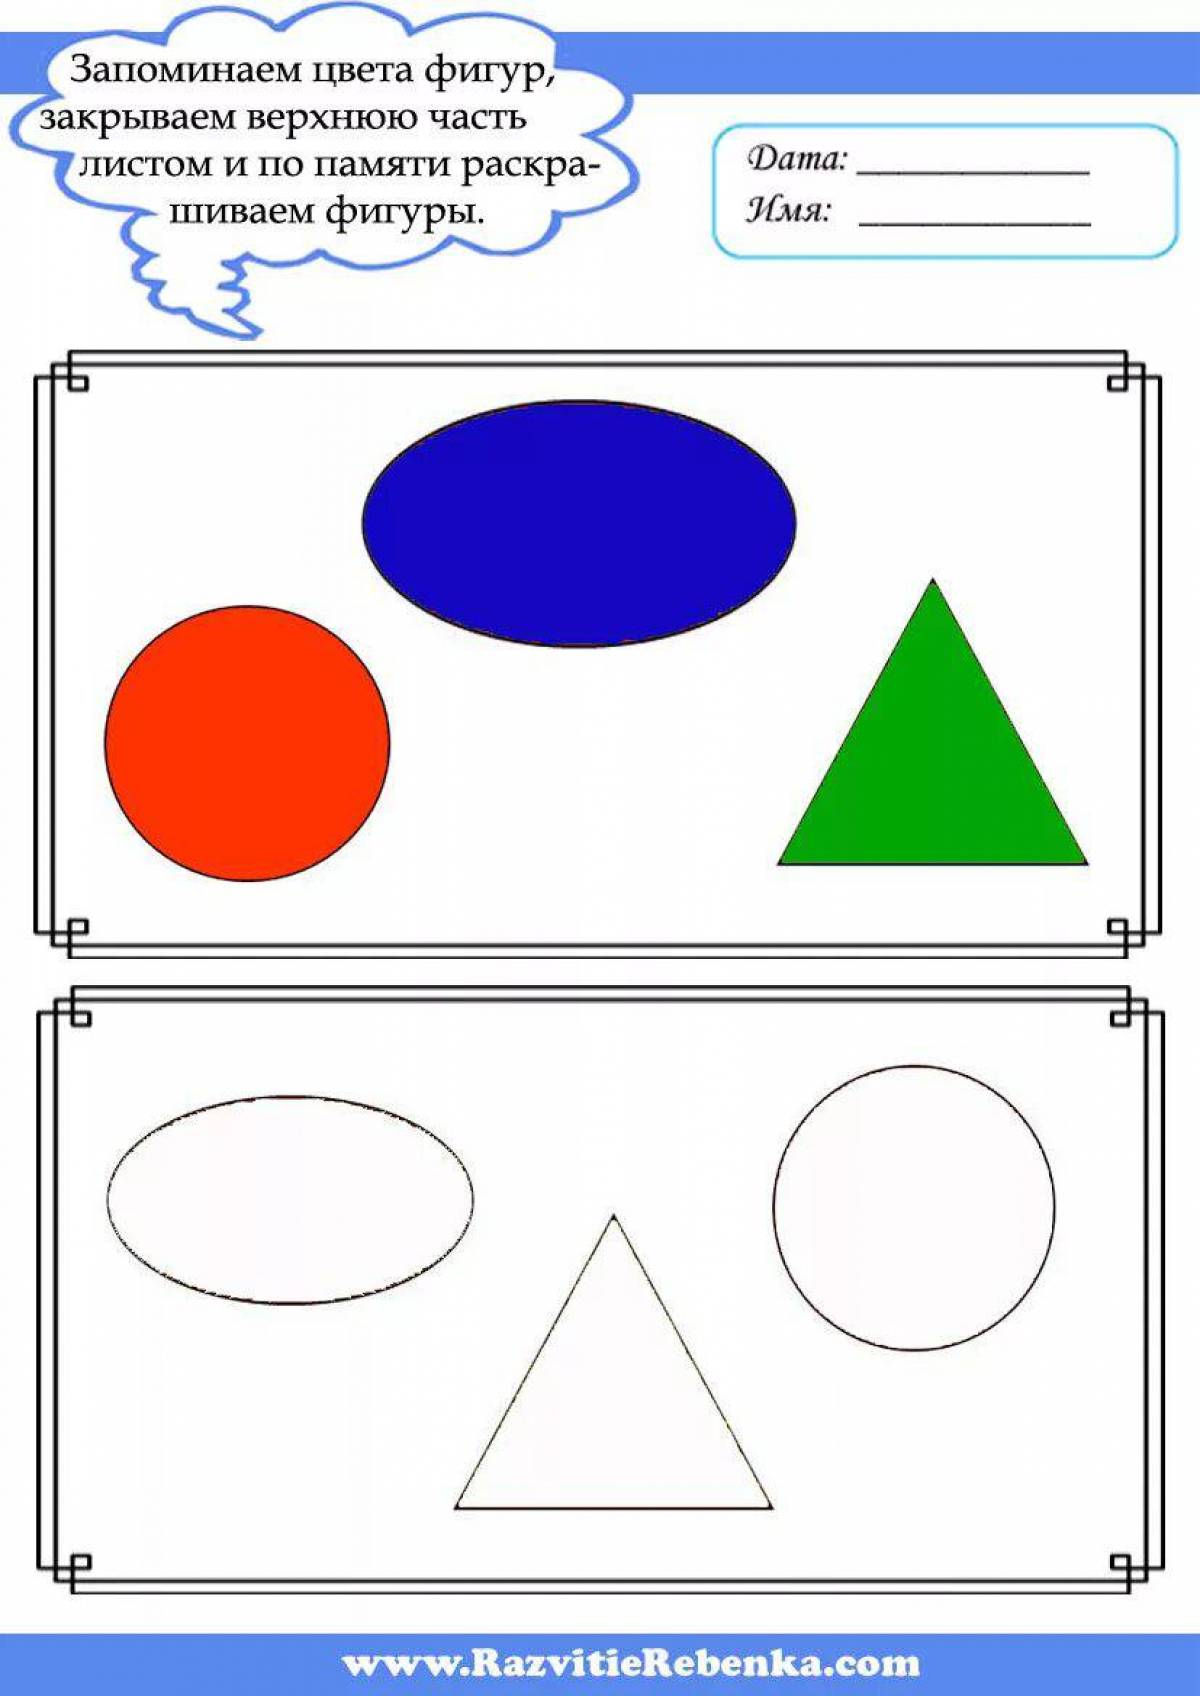 Игры квадрат круг треугольник. Геометрические фигуры для дите. Геометрические фигуры задания для детей. Геометр фигуры для дошкольников. Геометрические фигуры для занятия с детьми.